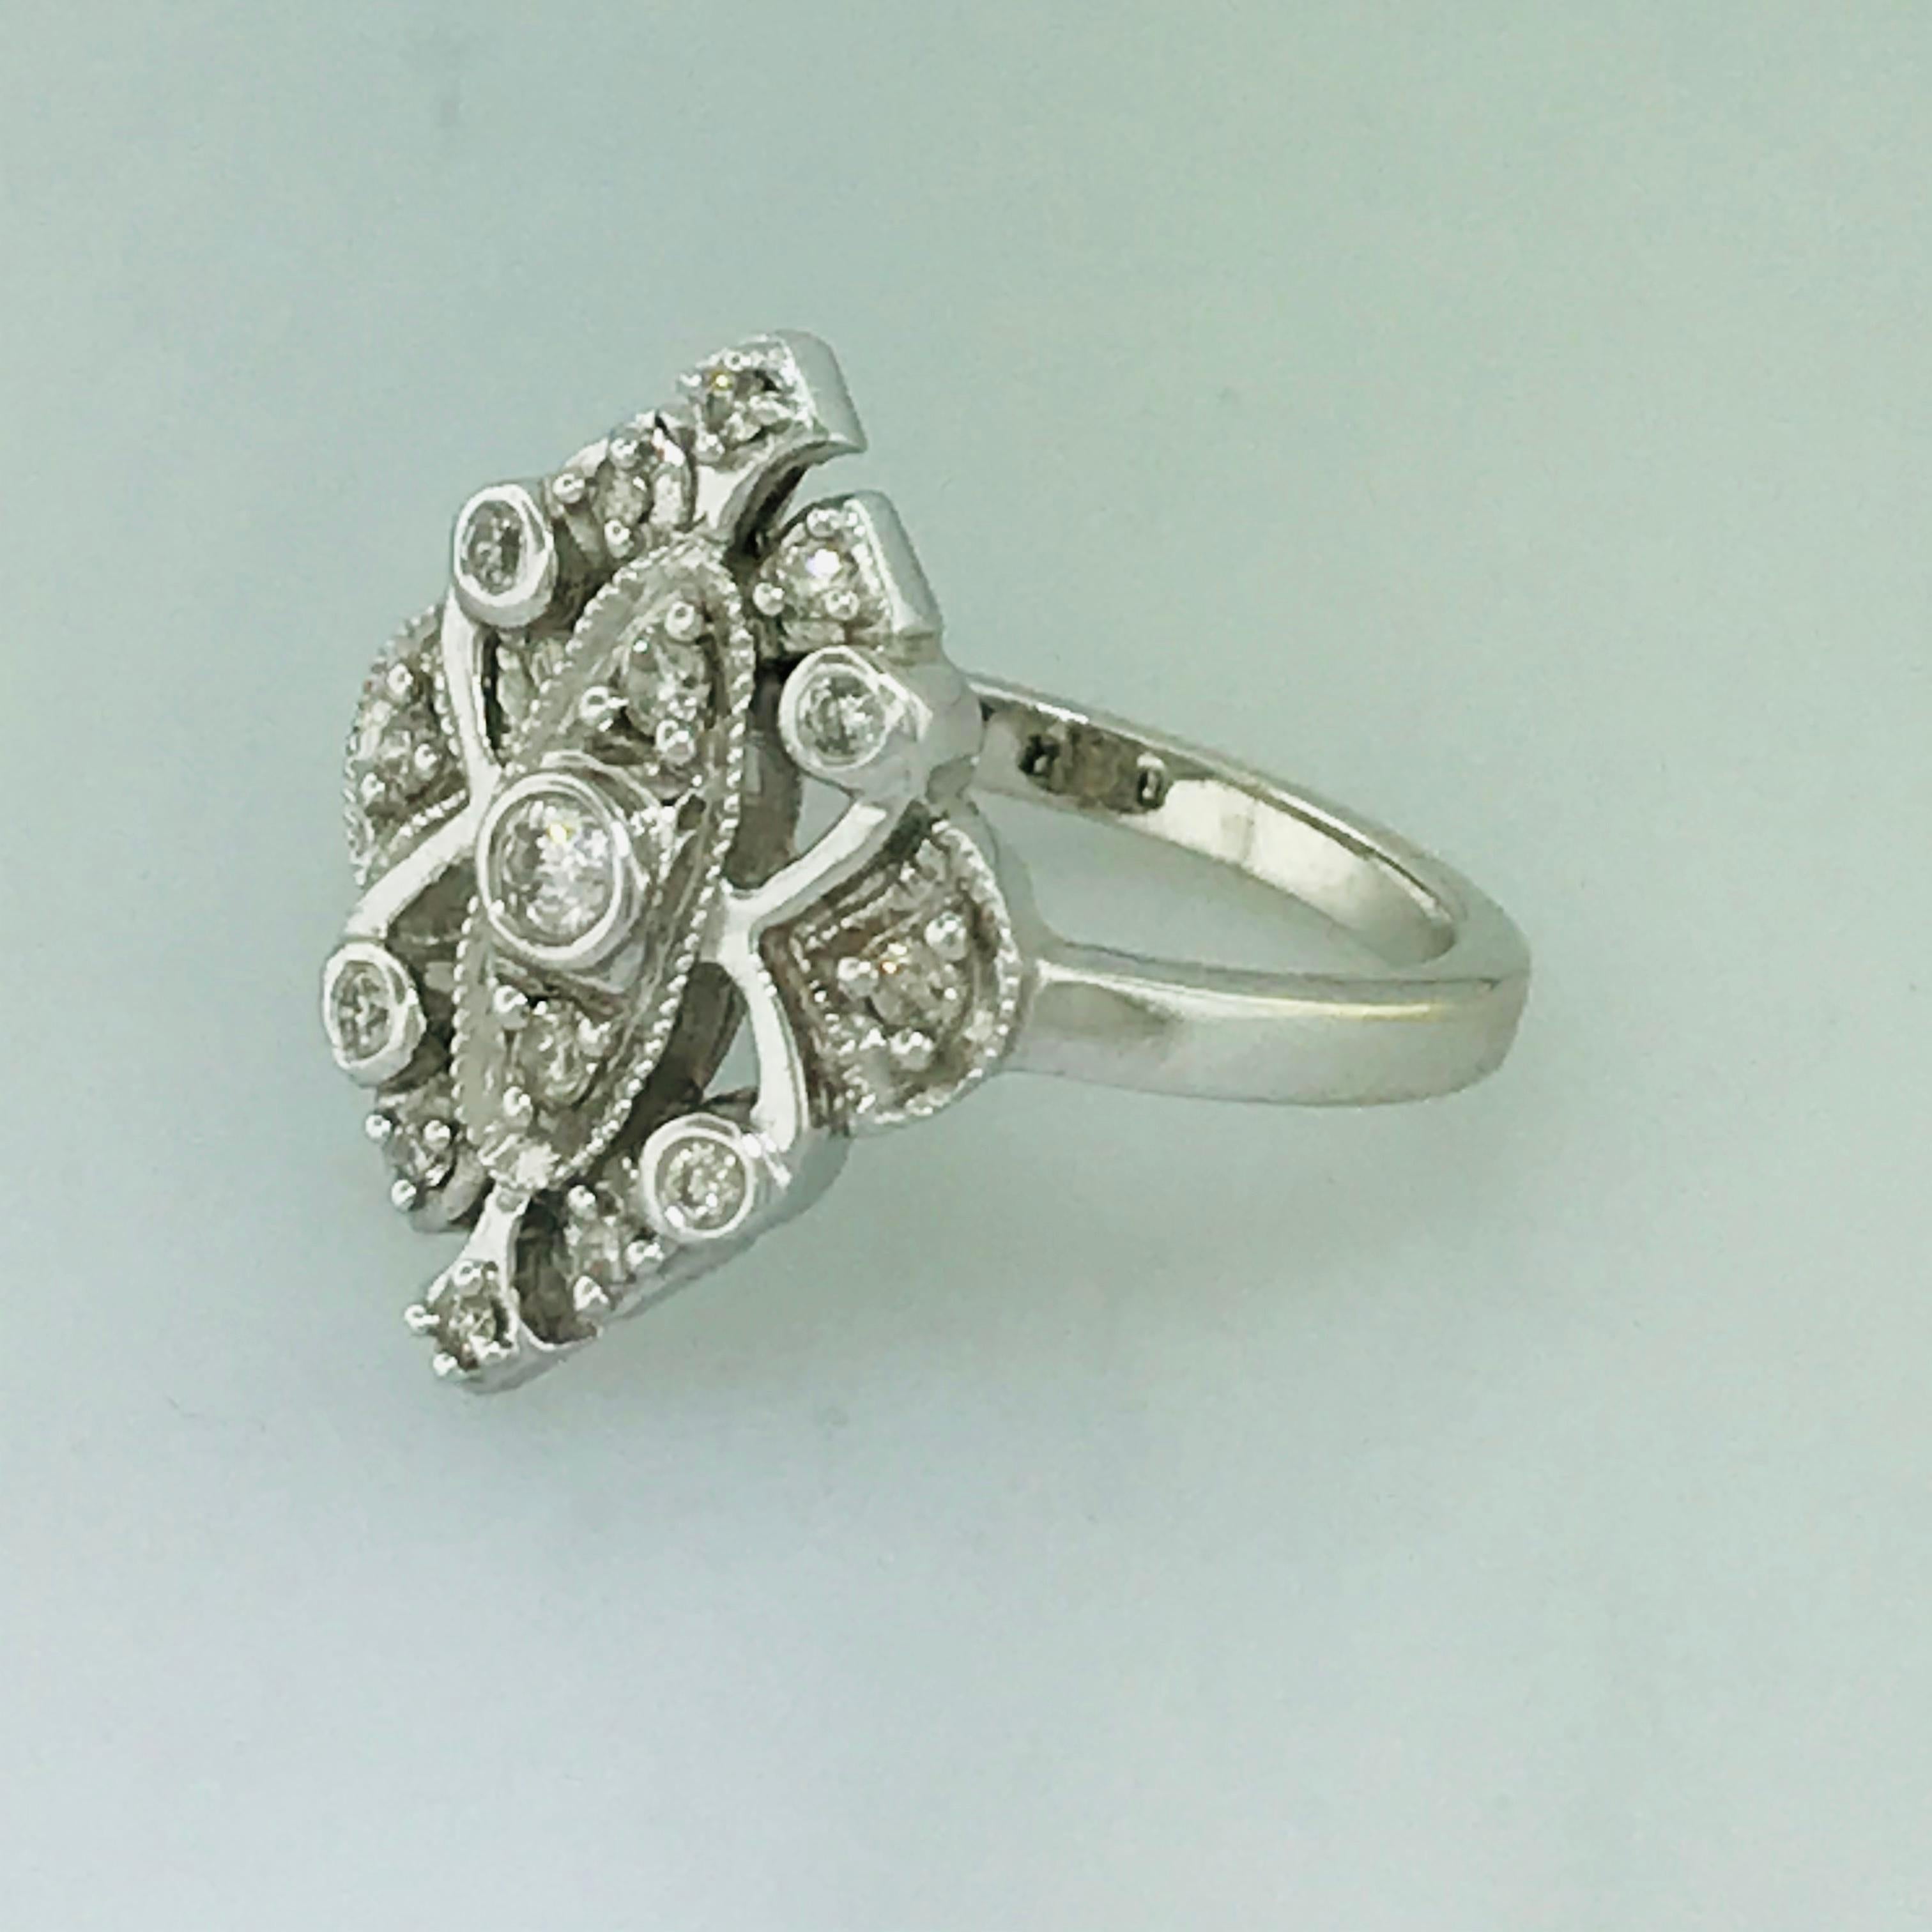 Art Nouveau Estate Engagement Ring w Diamonds .20 Carat Total Diamond Weight Vintage Design